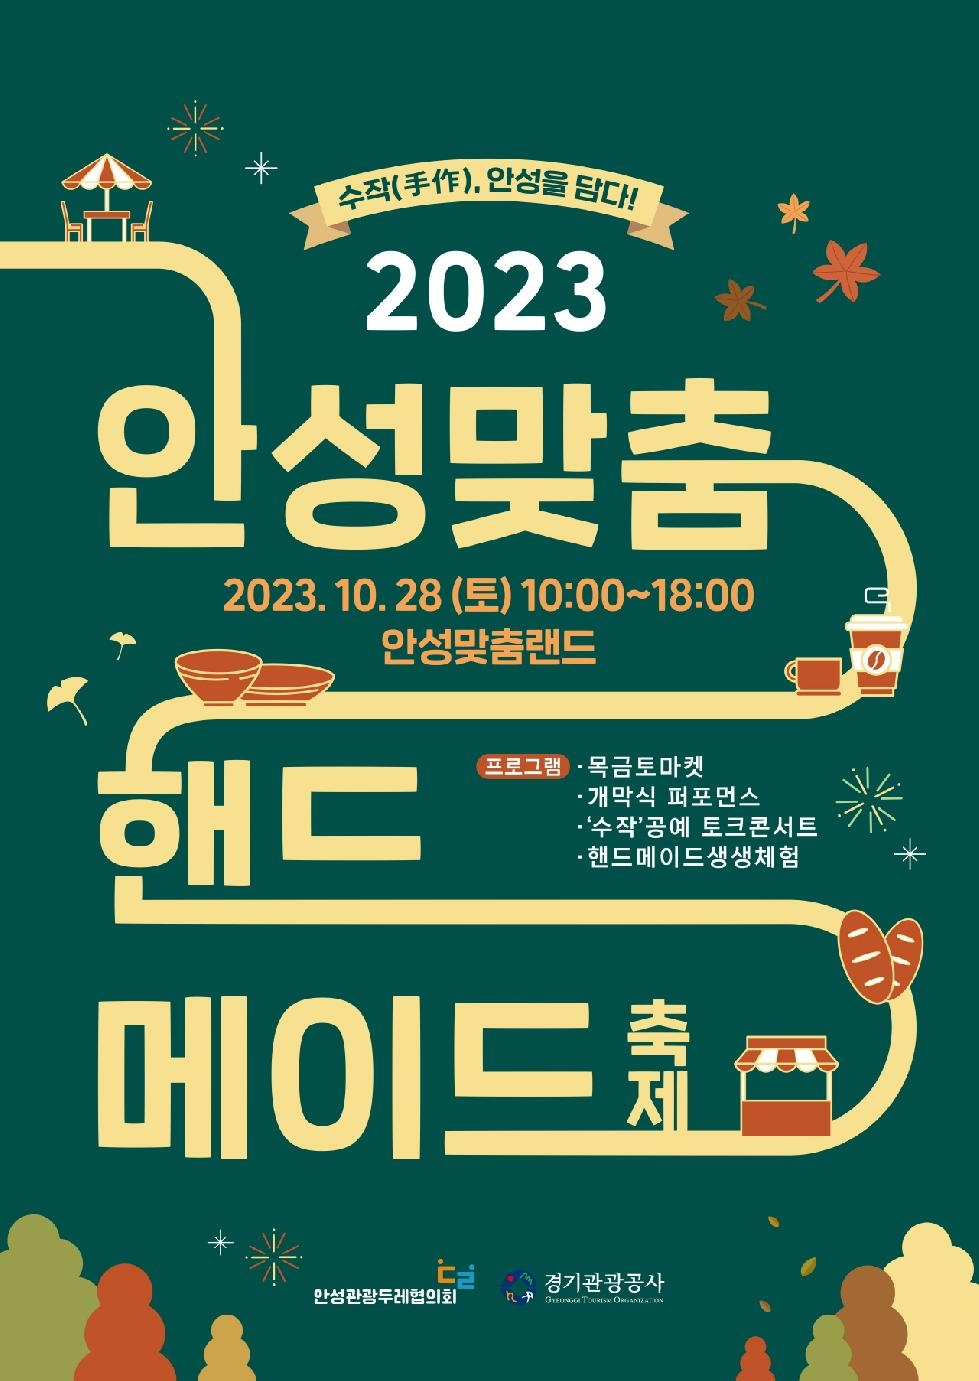 안성 공예문화 담은 ‘2023 안성맞춤 핸드메이드 축제’ 28일 개최